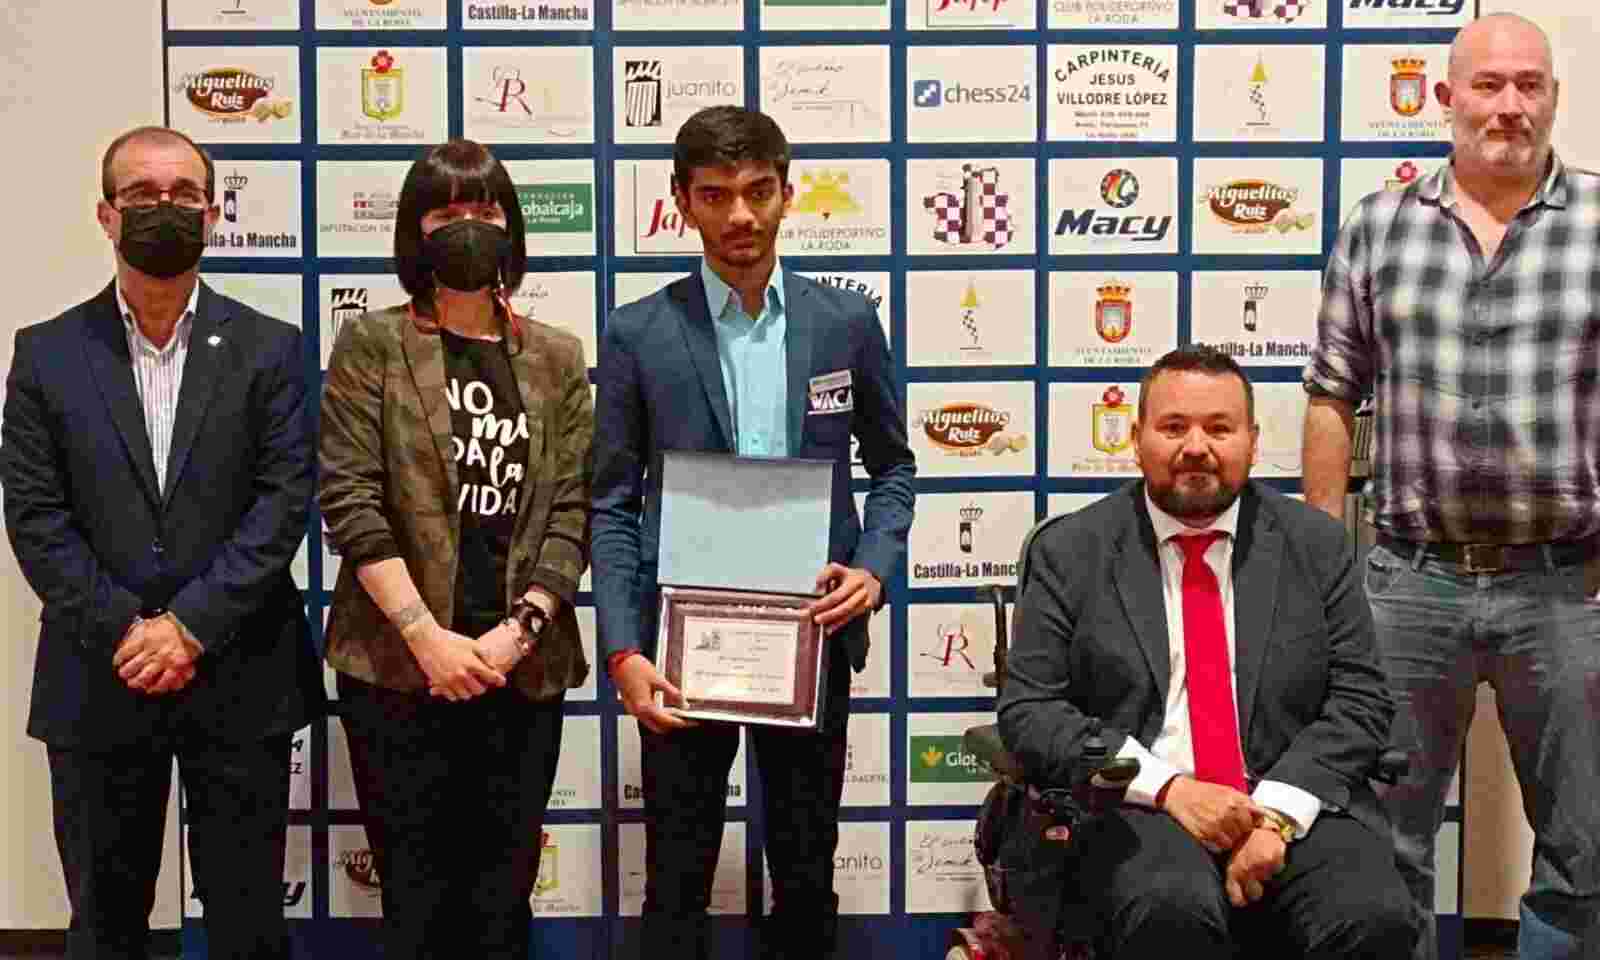 Indian GM Gukesh wins title at La Roda International tourney